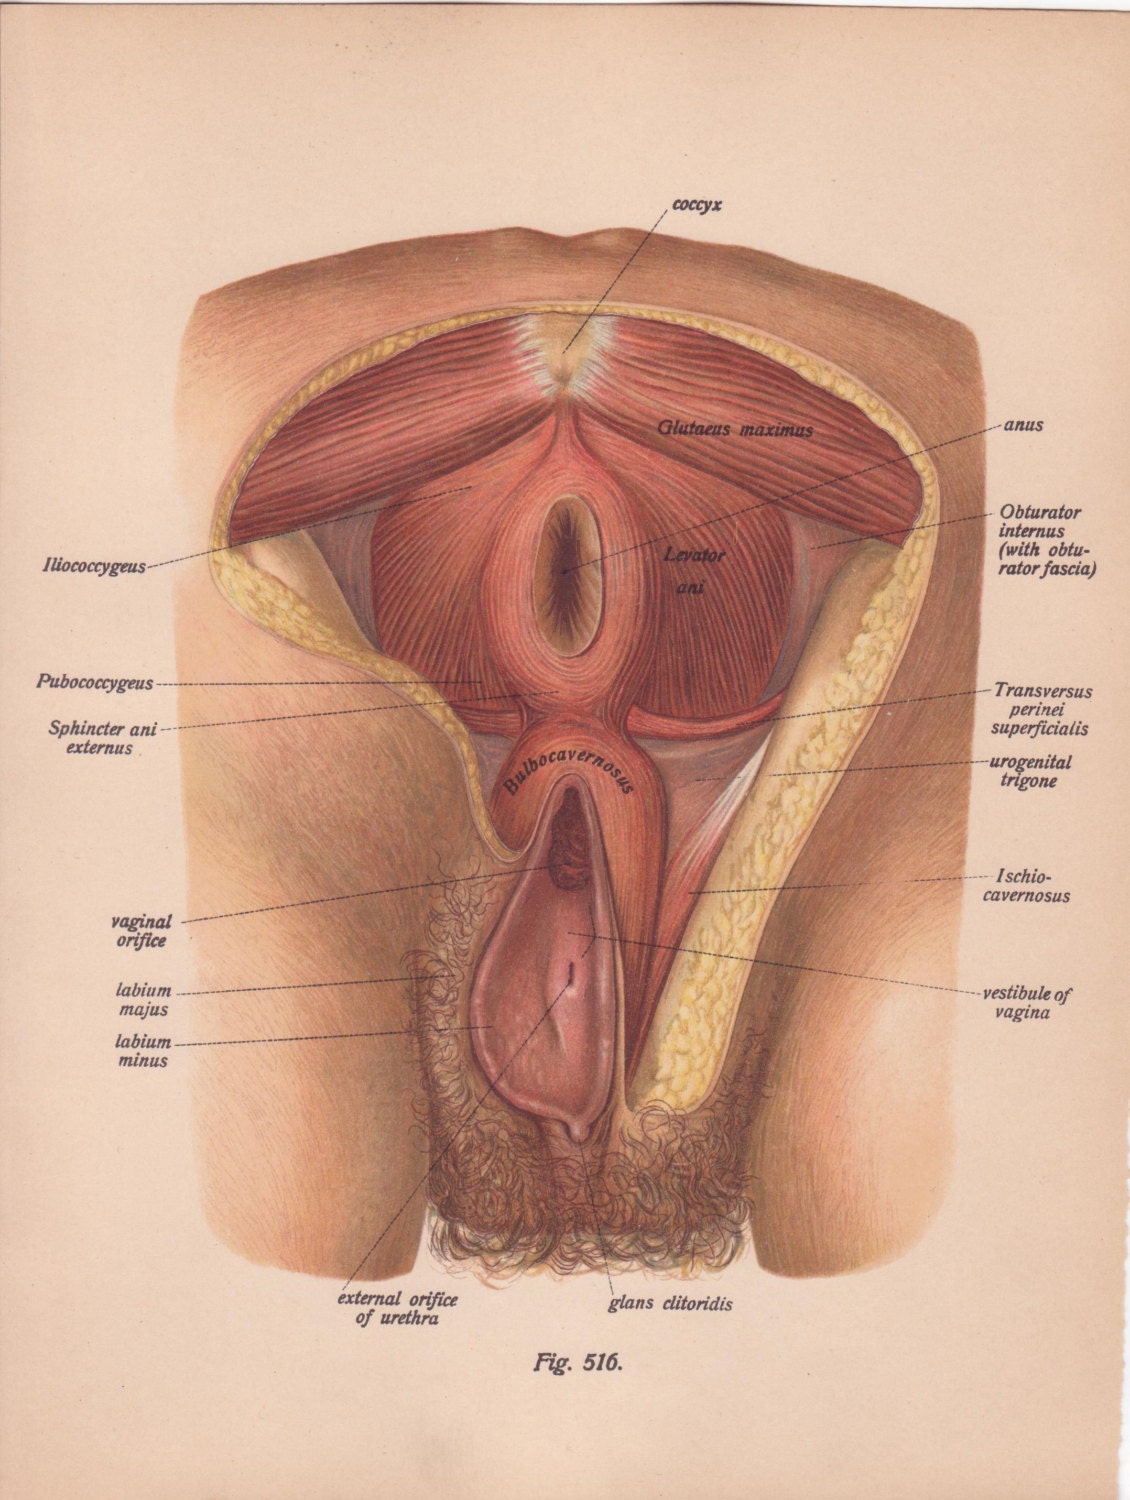 Female vagina and anus pics